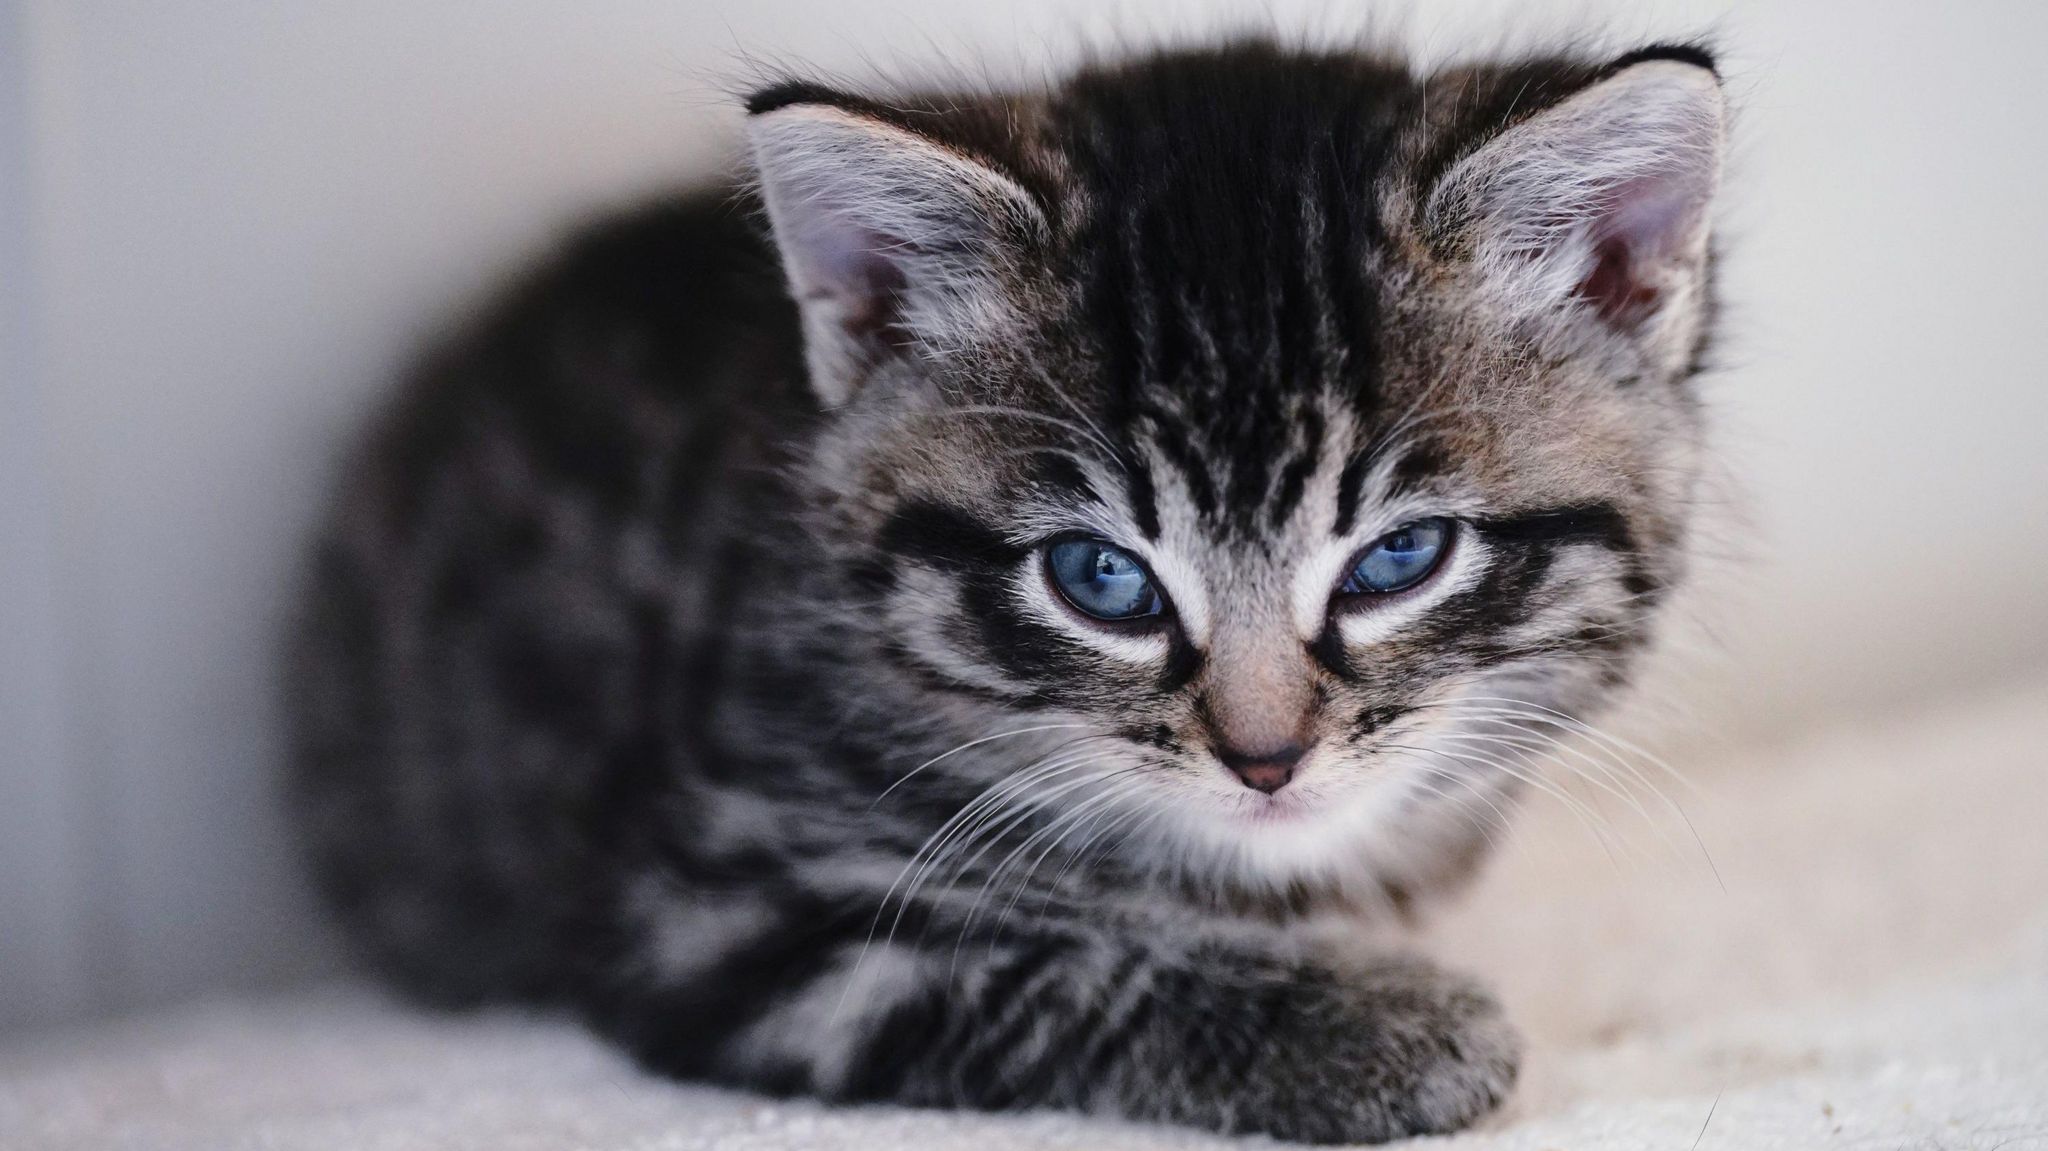 A photo of a kitten